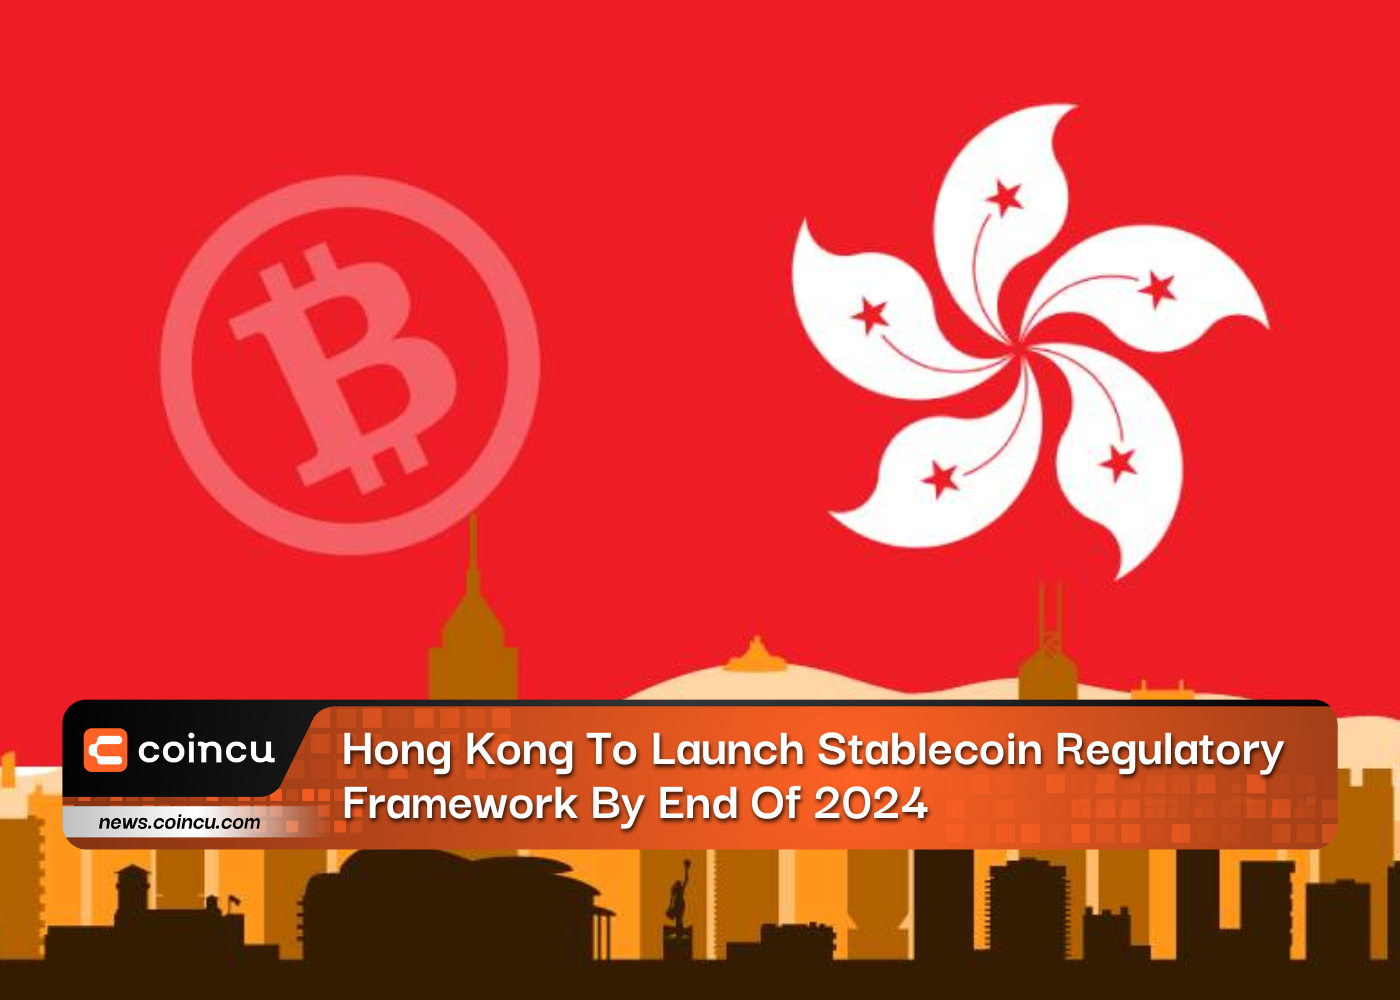 Hồng Kông sẽ ra mắt khung quy định Stablecoin vào cuối năm 2024